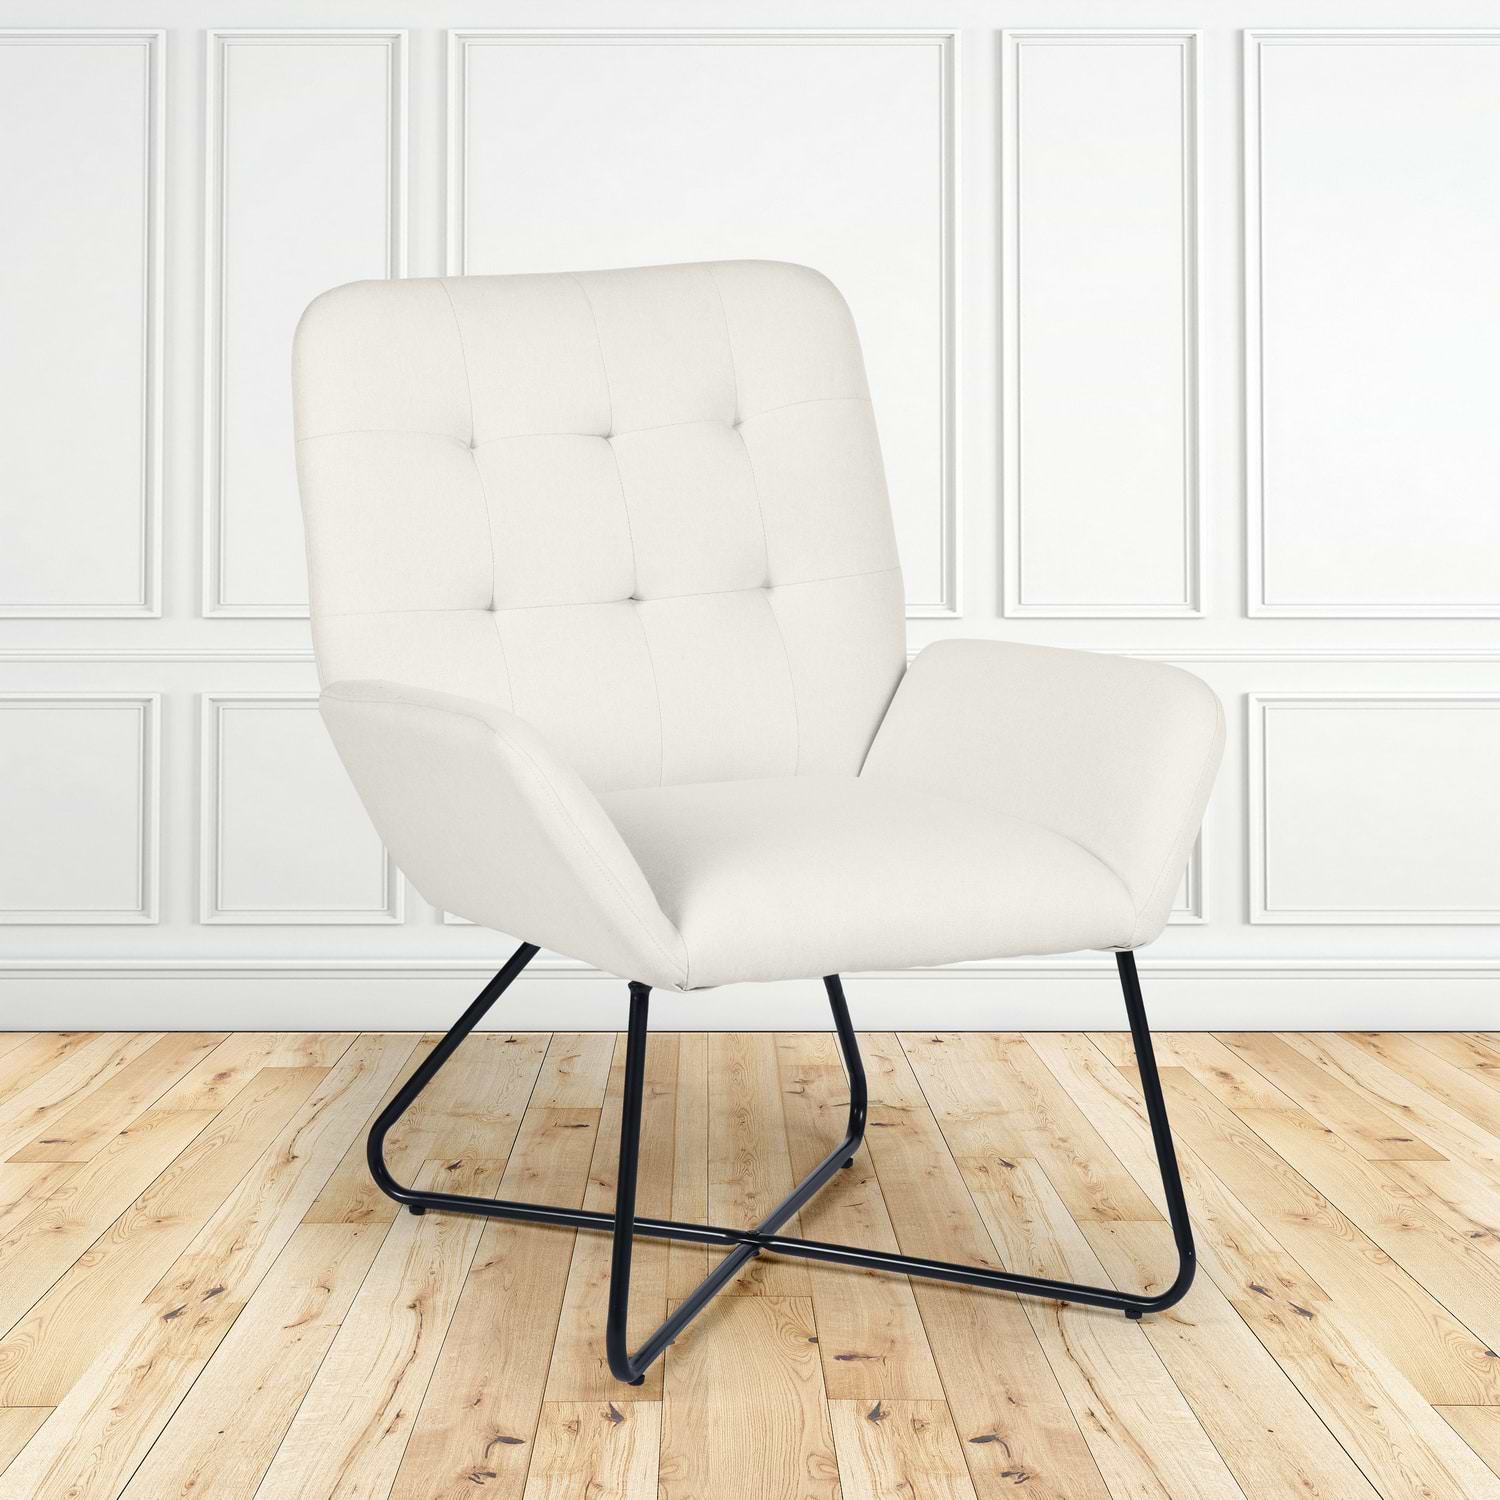 כורסא מעוצבת דגם NICOLAS צבע קרם HOMAX